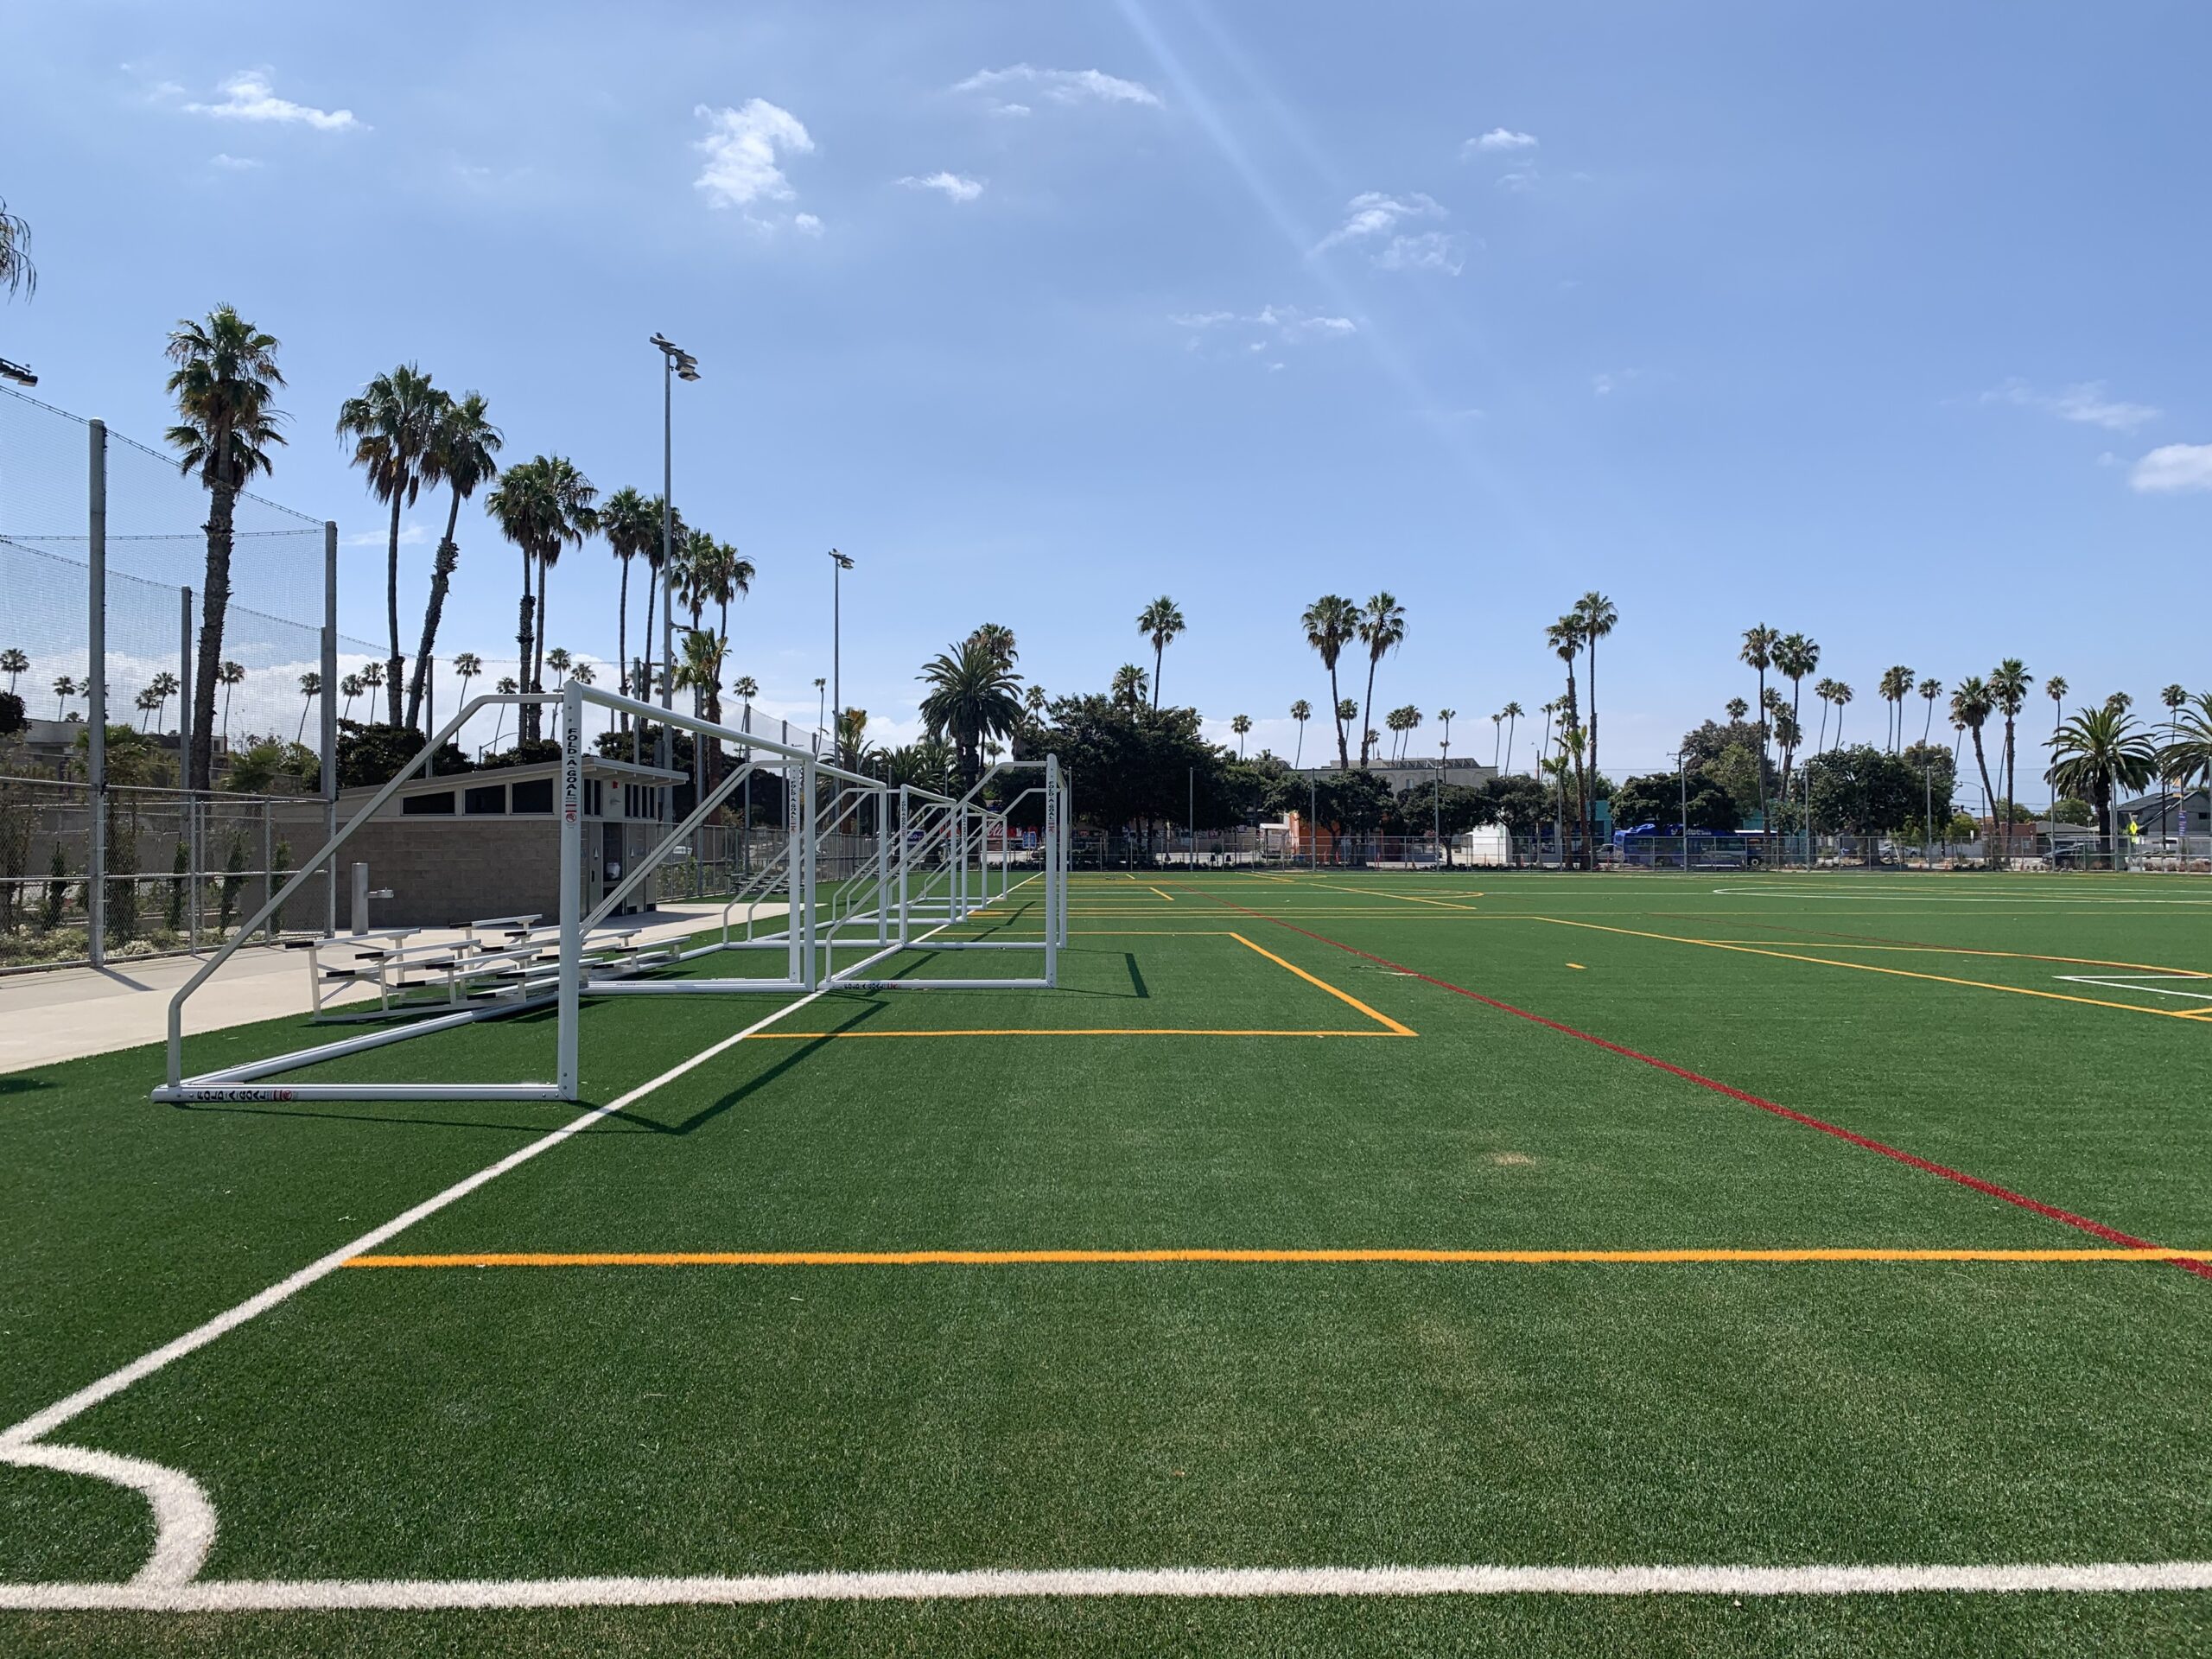 Featured image for “Santa Monica Civic Multi-Purpose Sports Field”